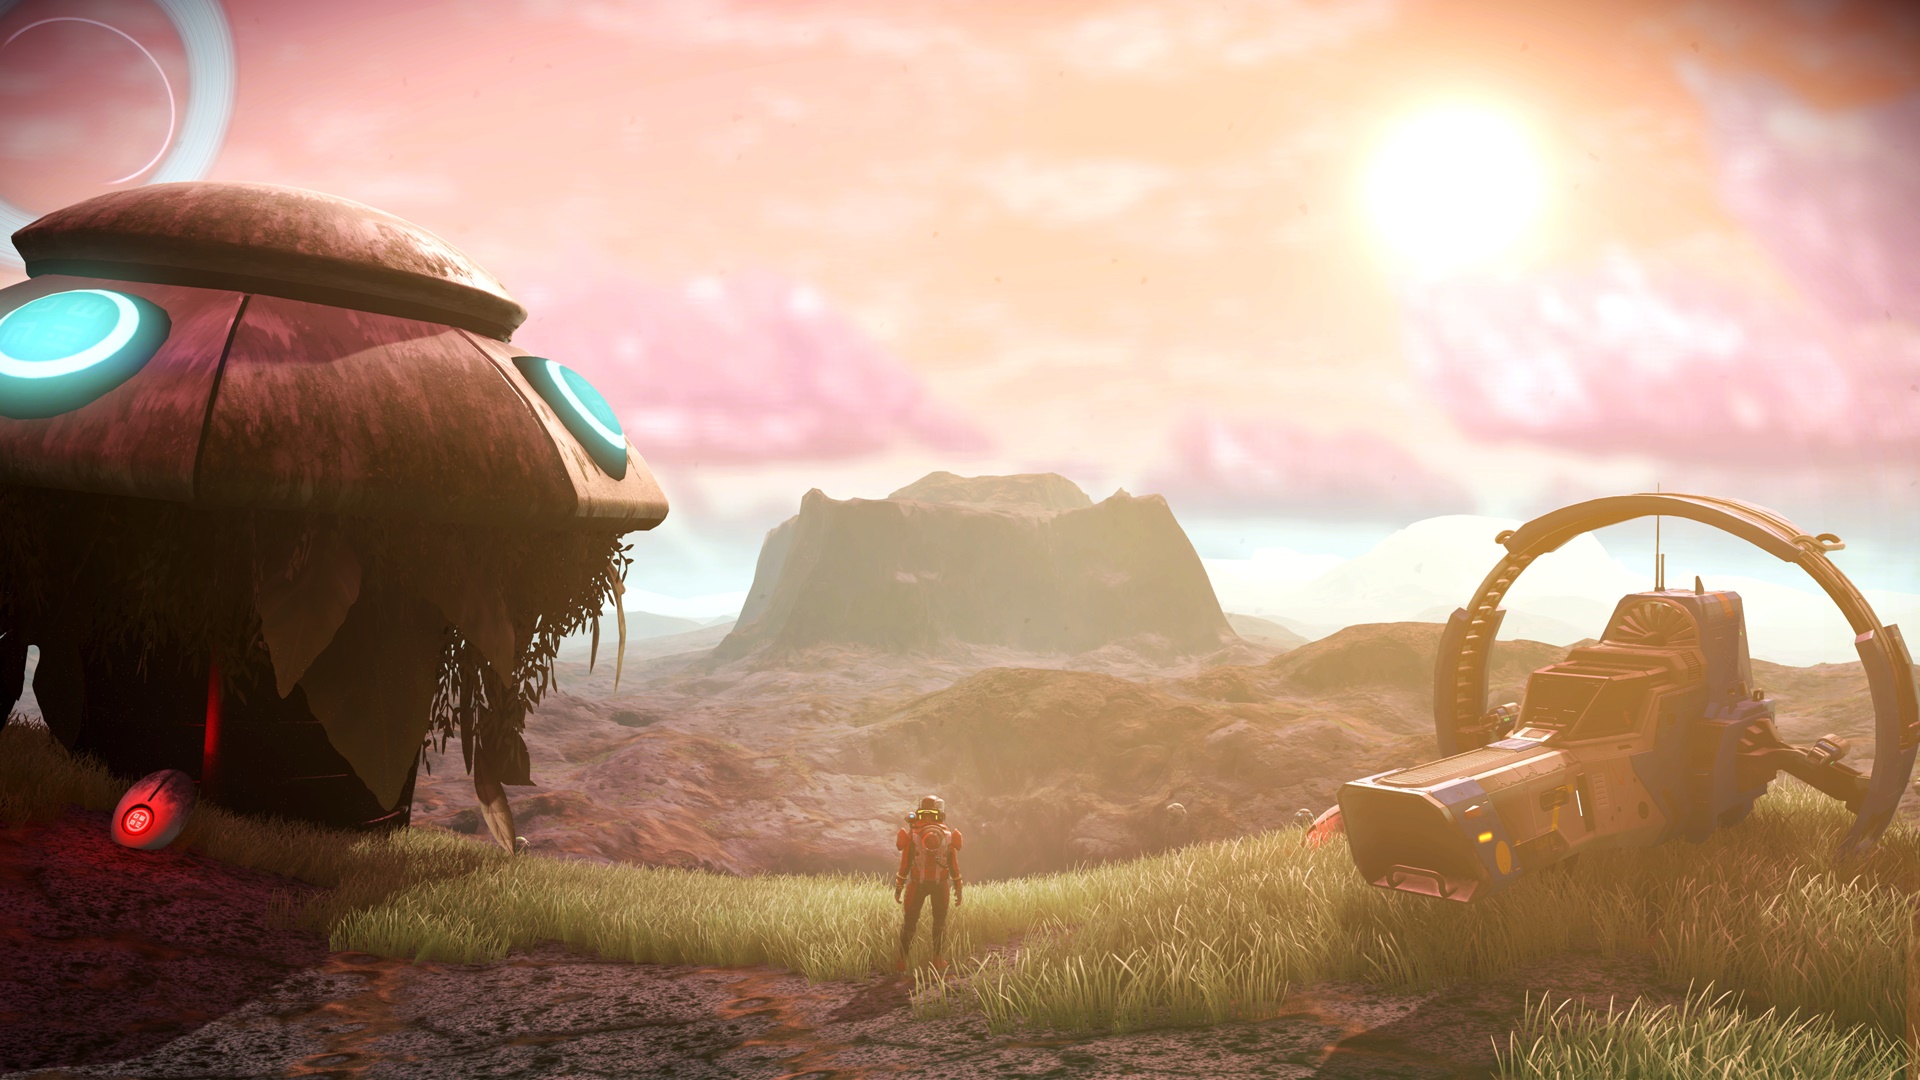 Best space games: No Man's Sky. Image shows a beautiful alien landscape.